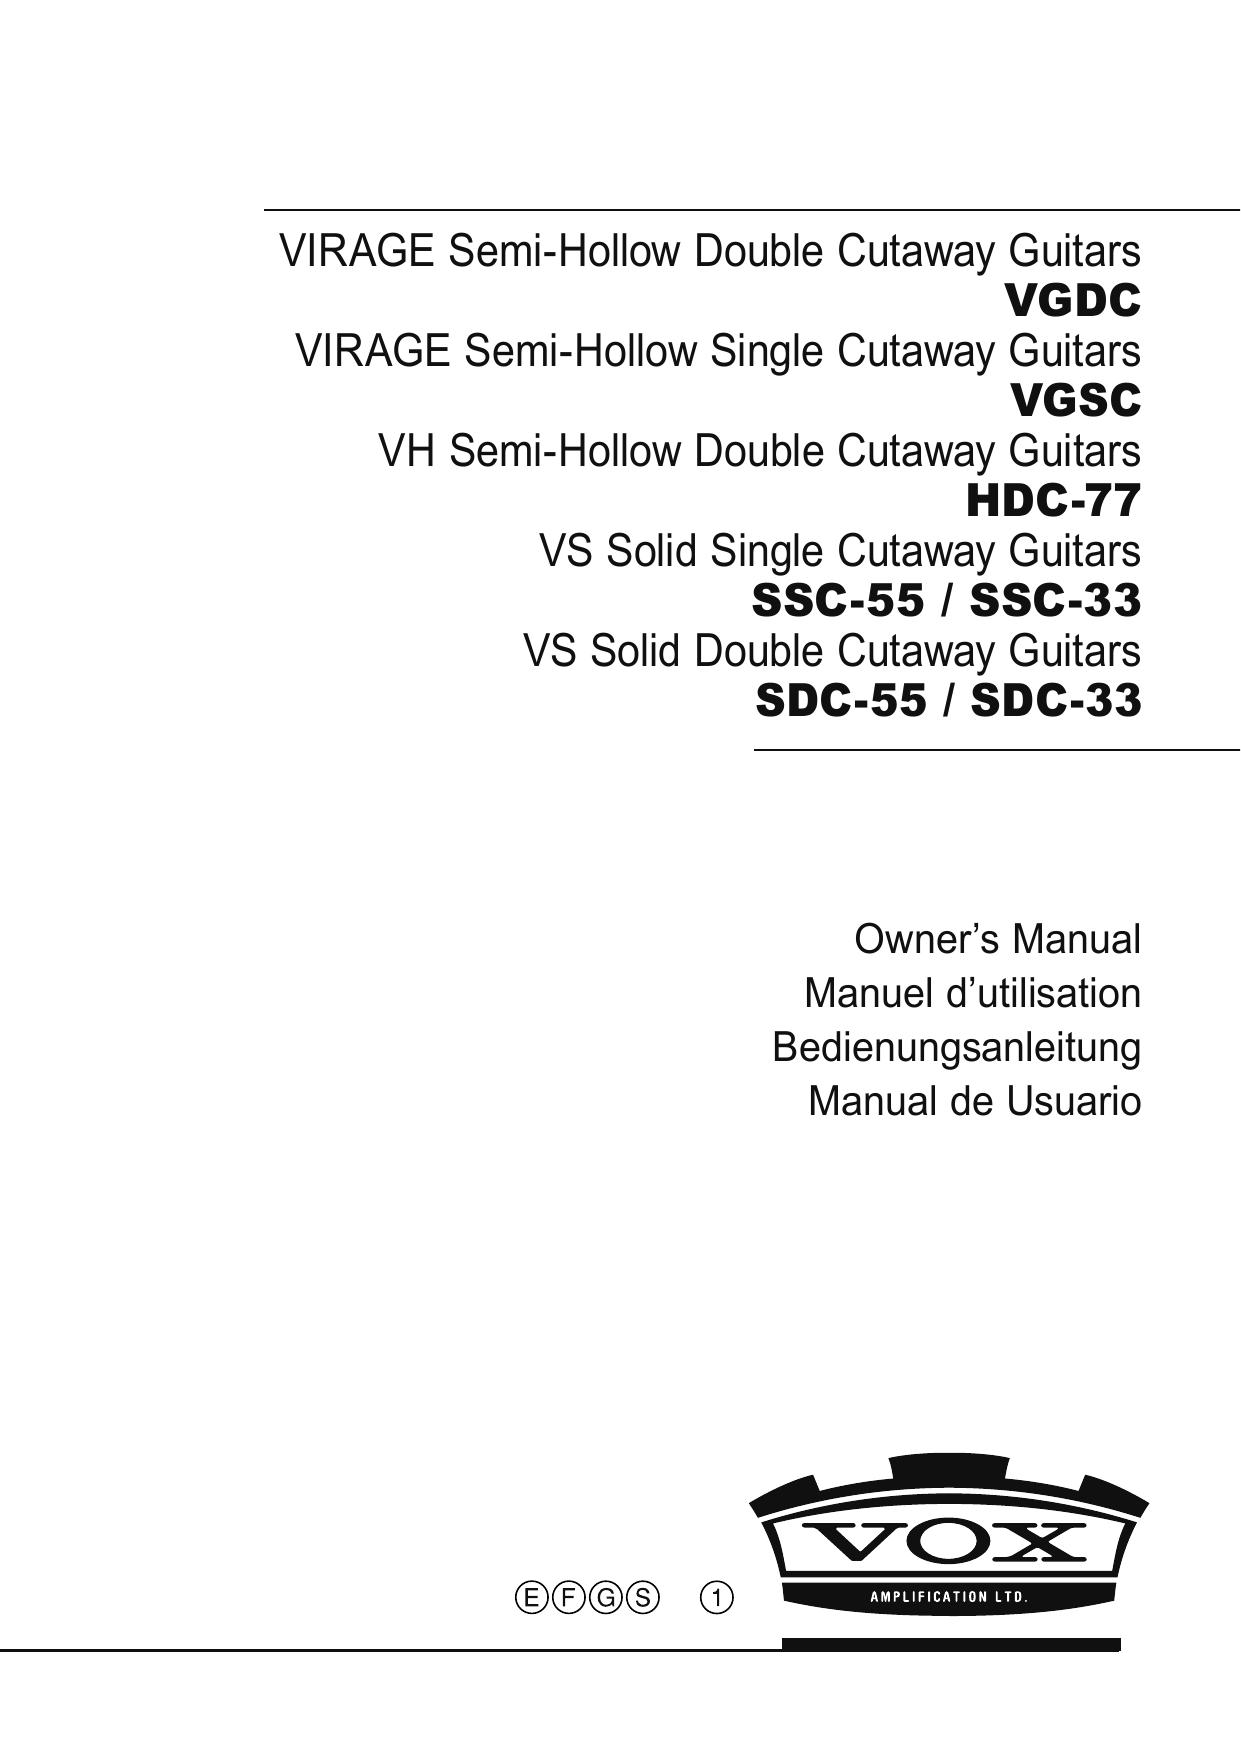 Vox VGSC Guitar User Manual